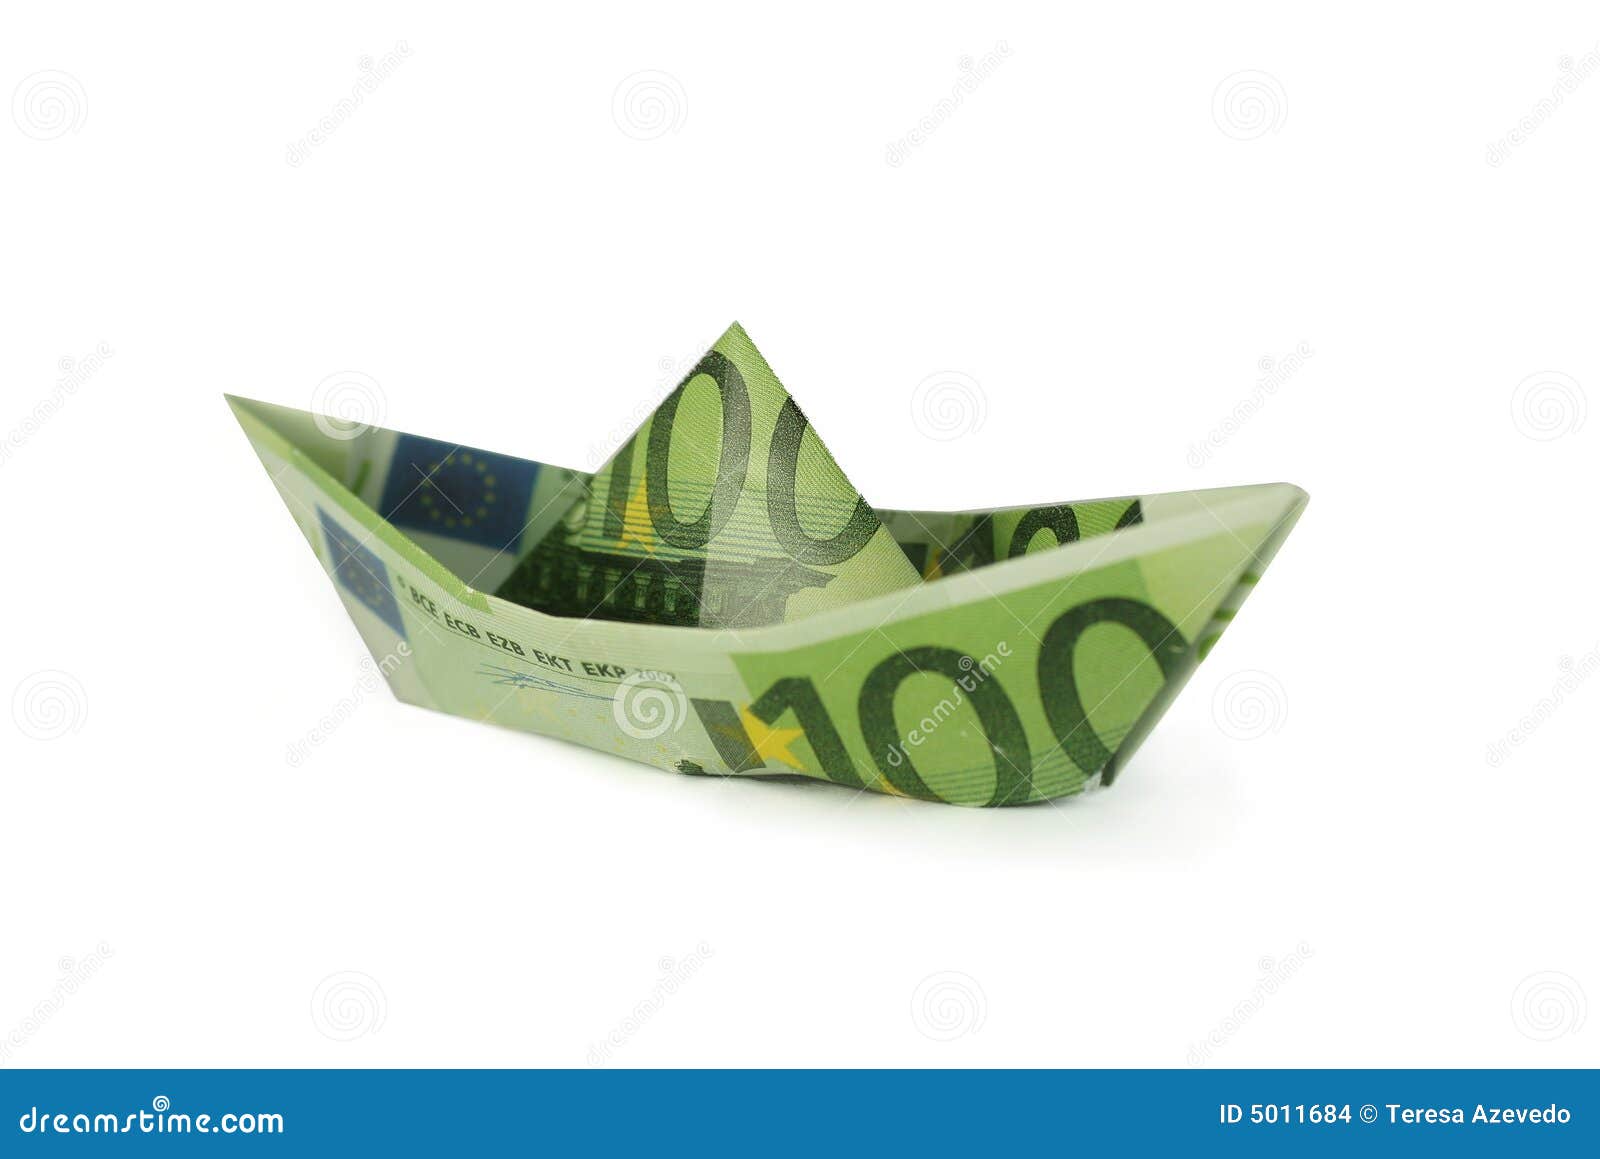 Folded Money Boat Stock Images - Image: 5011684